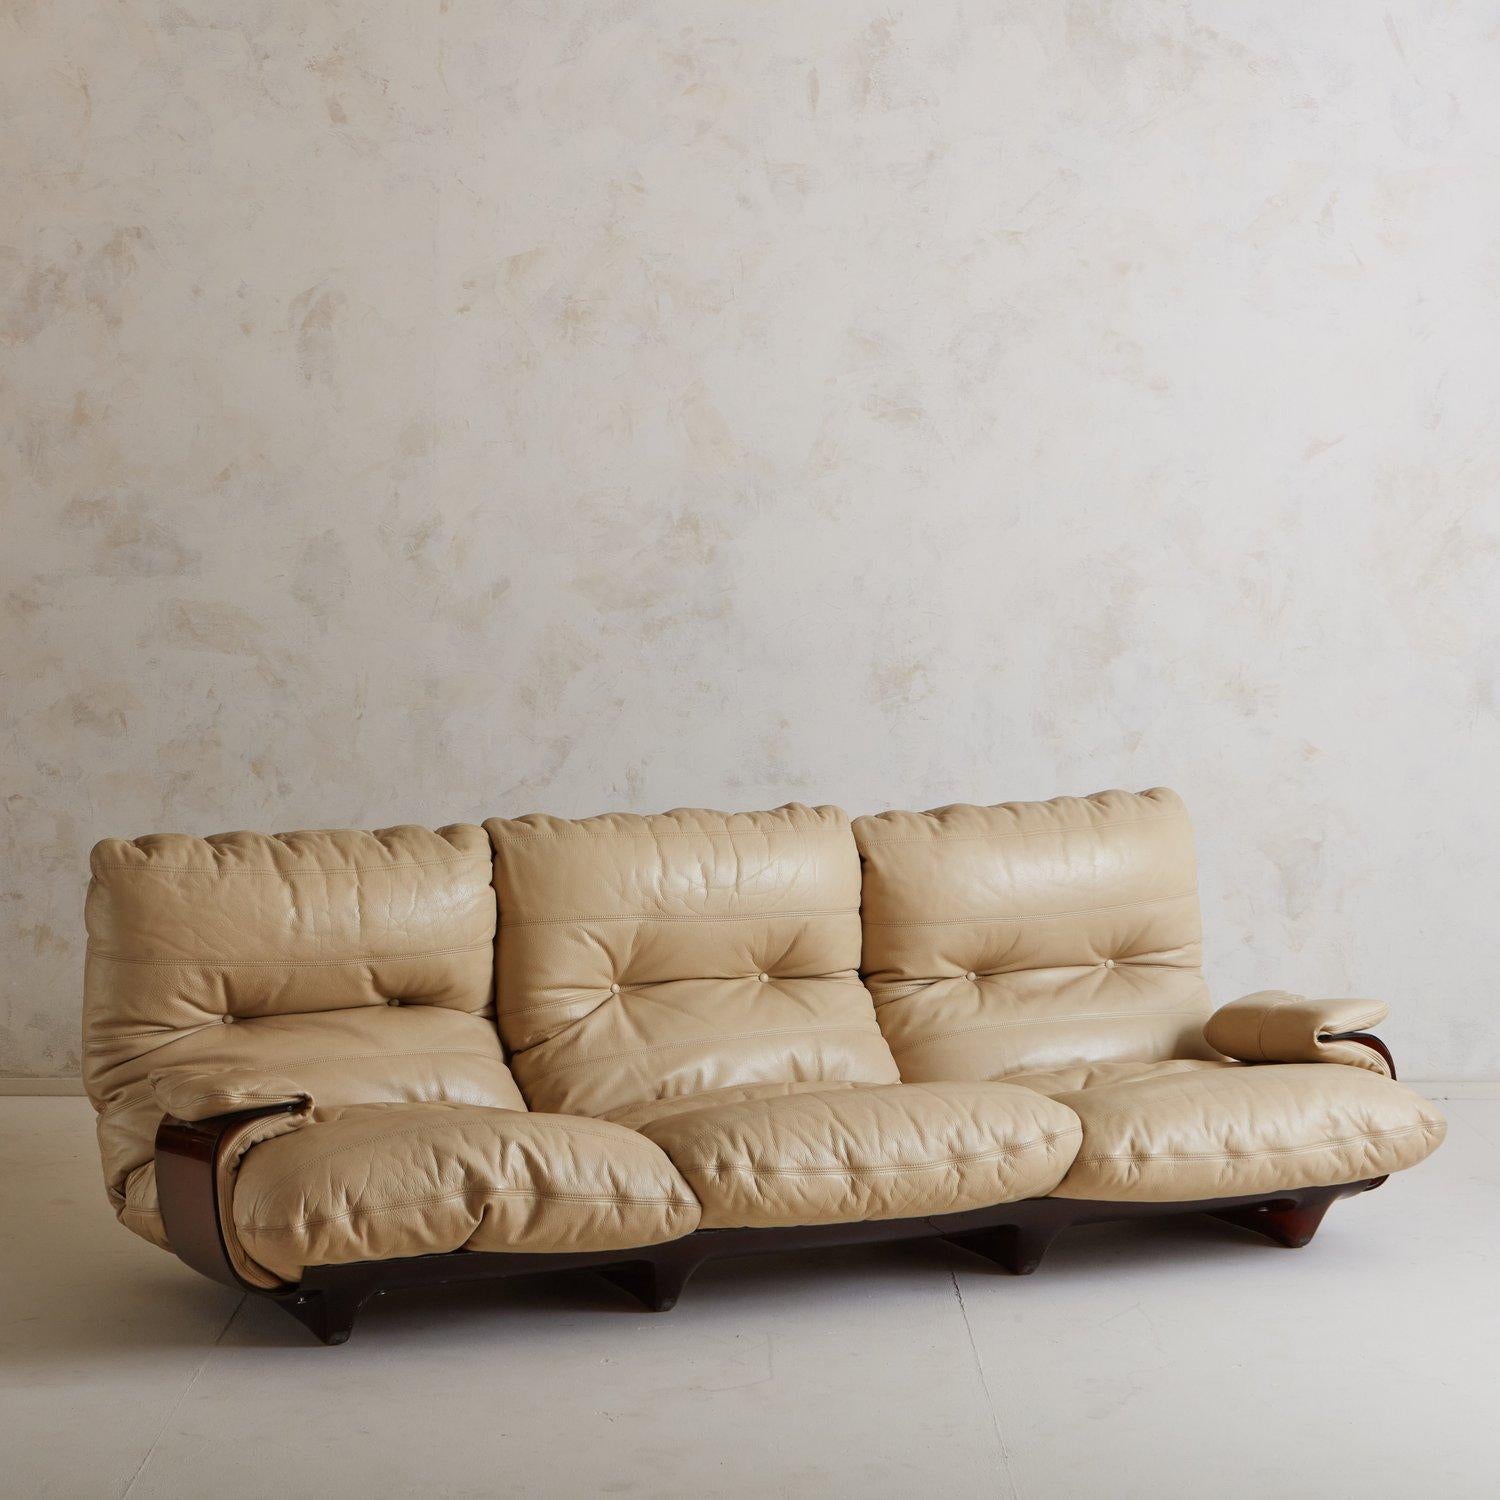 Ein dreisitziges Marsala-Sofa, entworfen von Michel Ducaroy für Lignet Roset. Dieses Sofa hat einen gebogenen Rahmen aus bernsteinfarbenem Plexiglas. Er hat eine auffällige cremefarbene Original-Lederpolsterung und zwei Armlehnen. Behält das